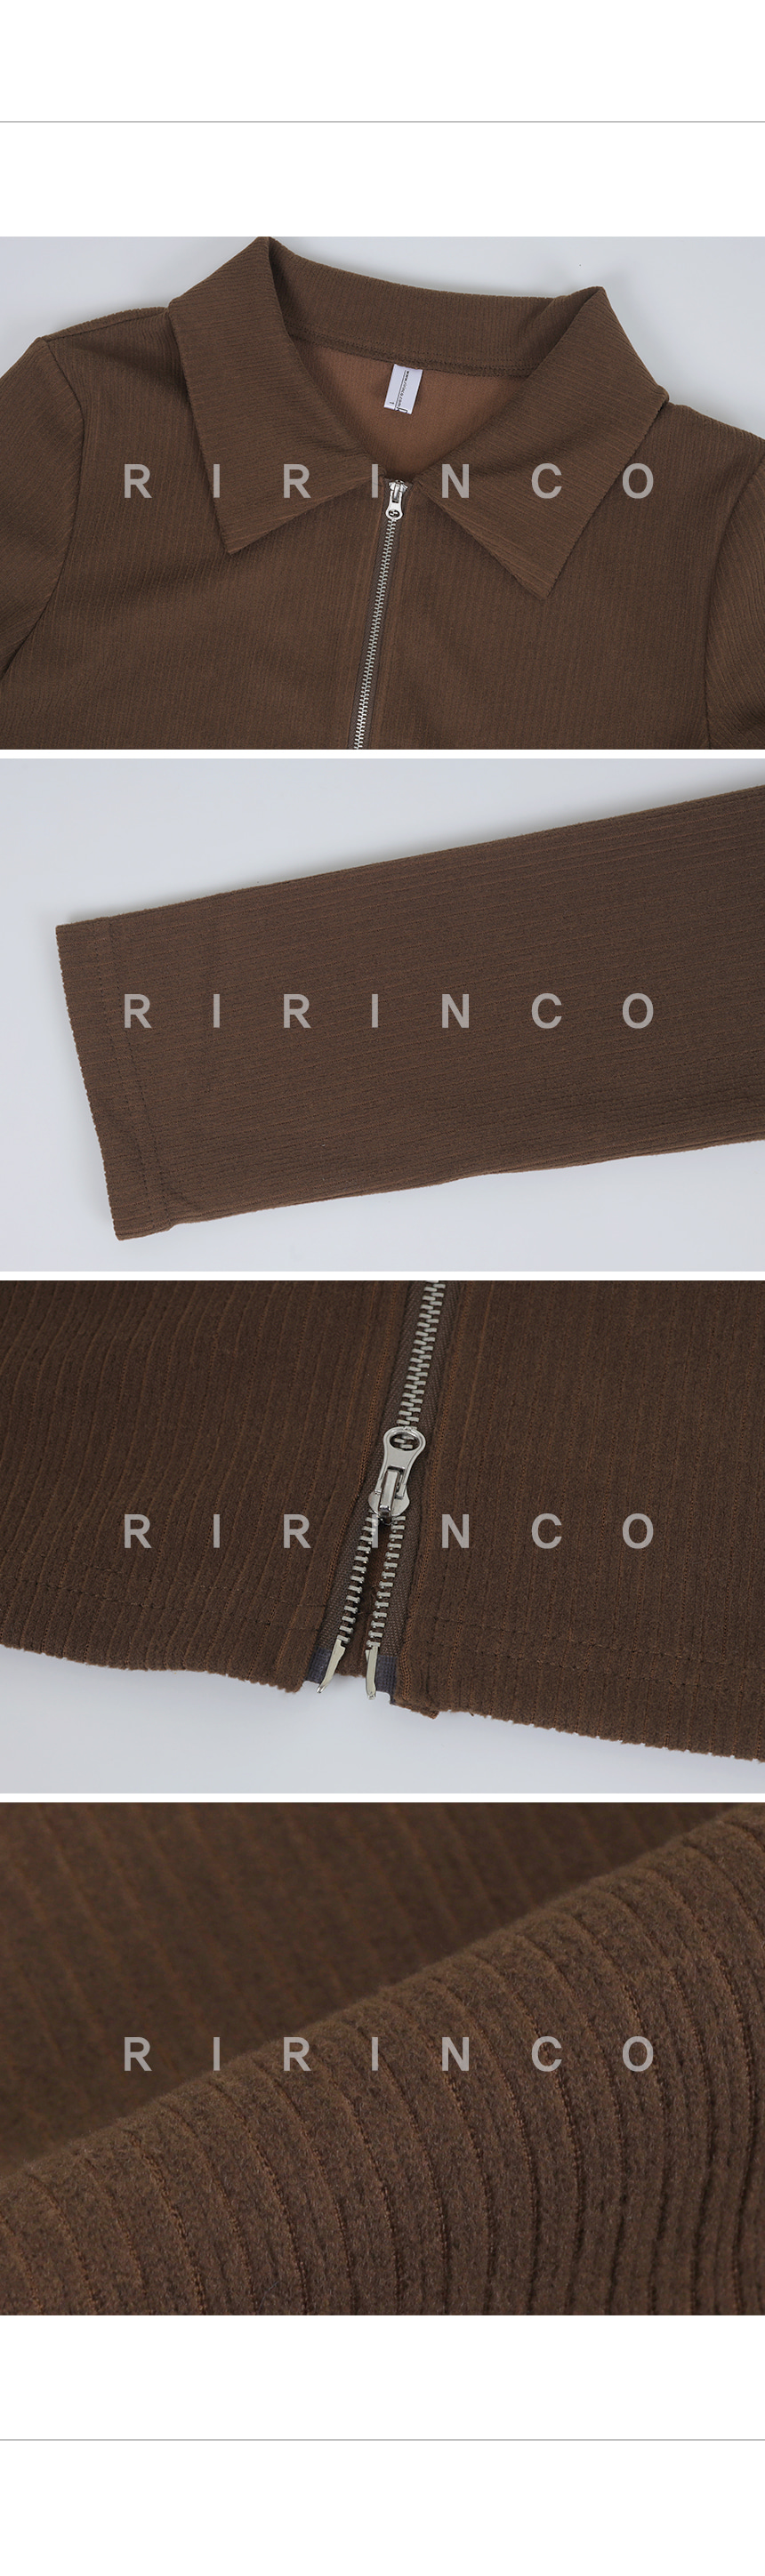 RIRINCO リブ編みカラーネックジップアップ